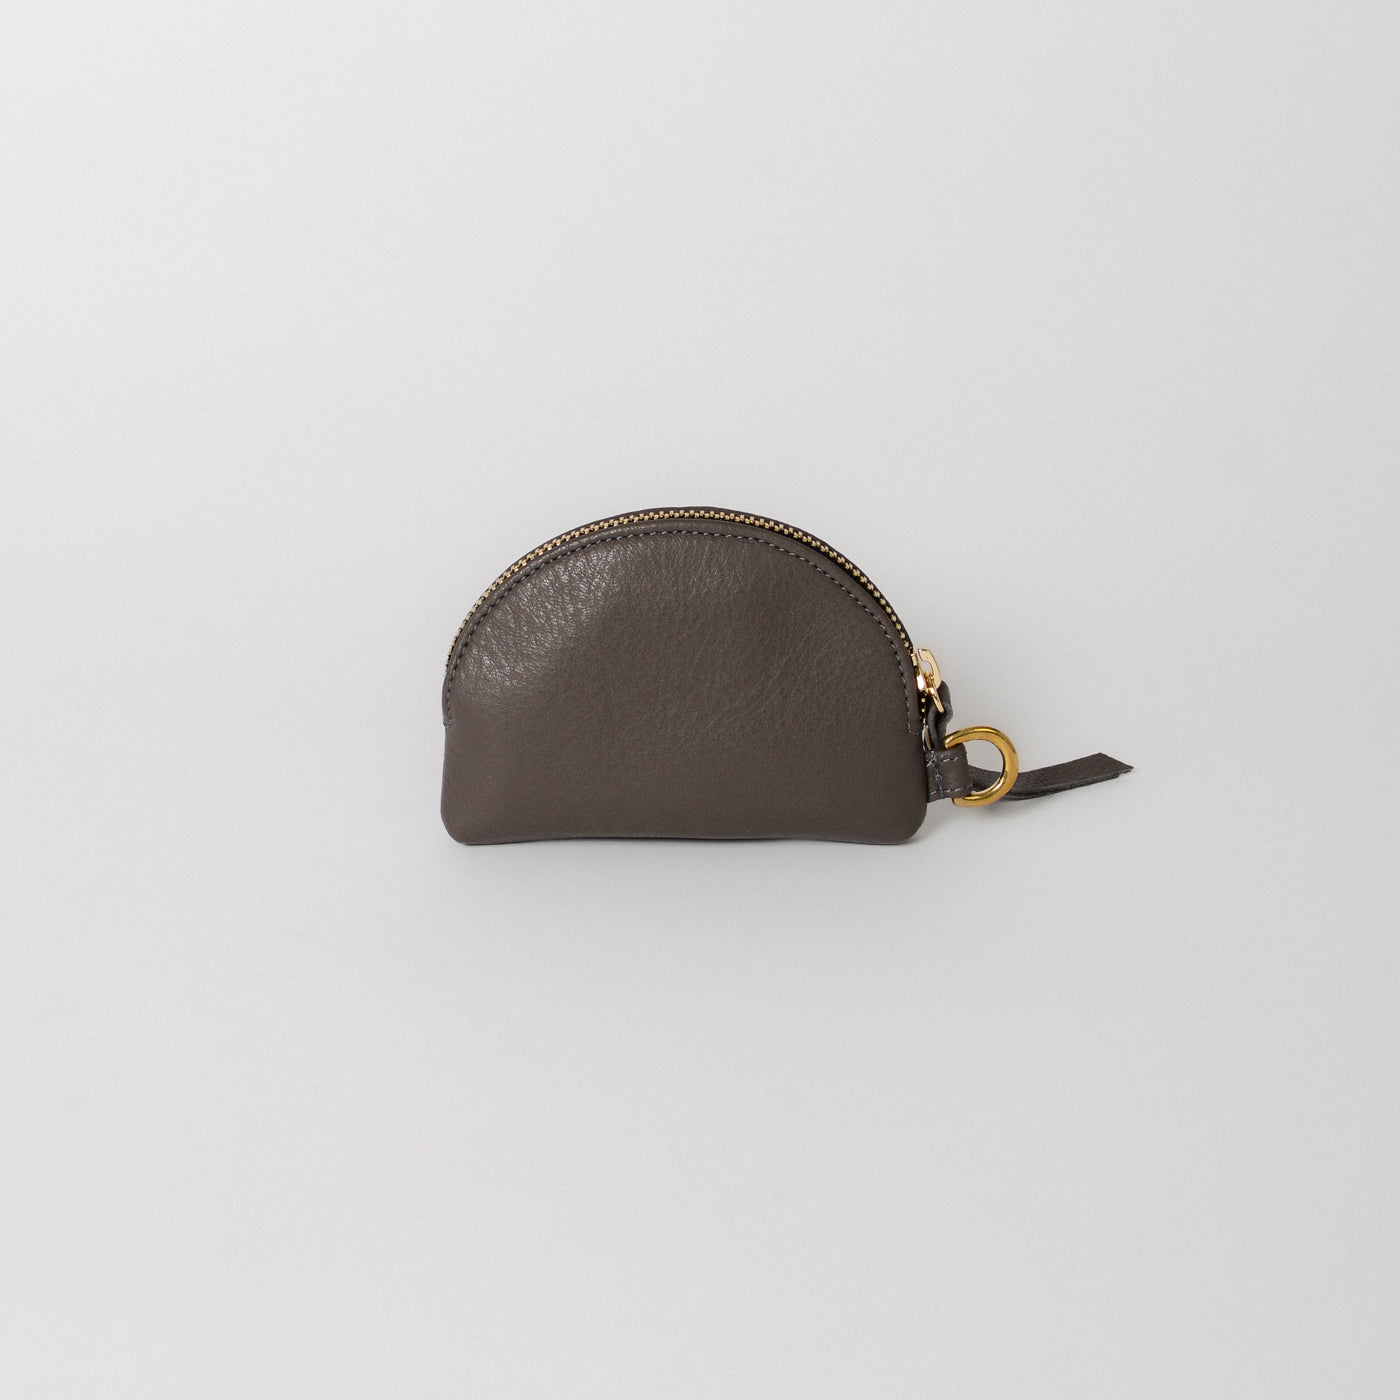 Brown Multi pocket Unisex wallet with zip Closure By Brune & Bareskin